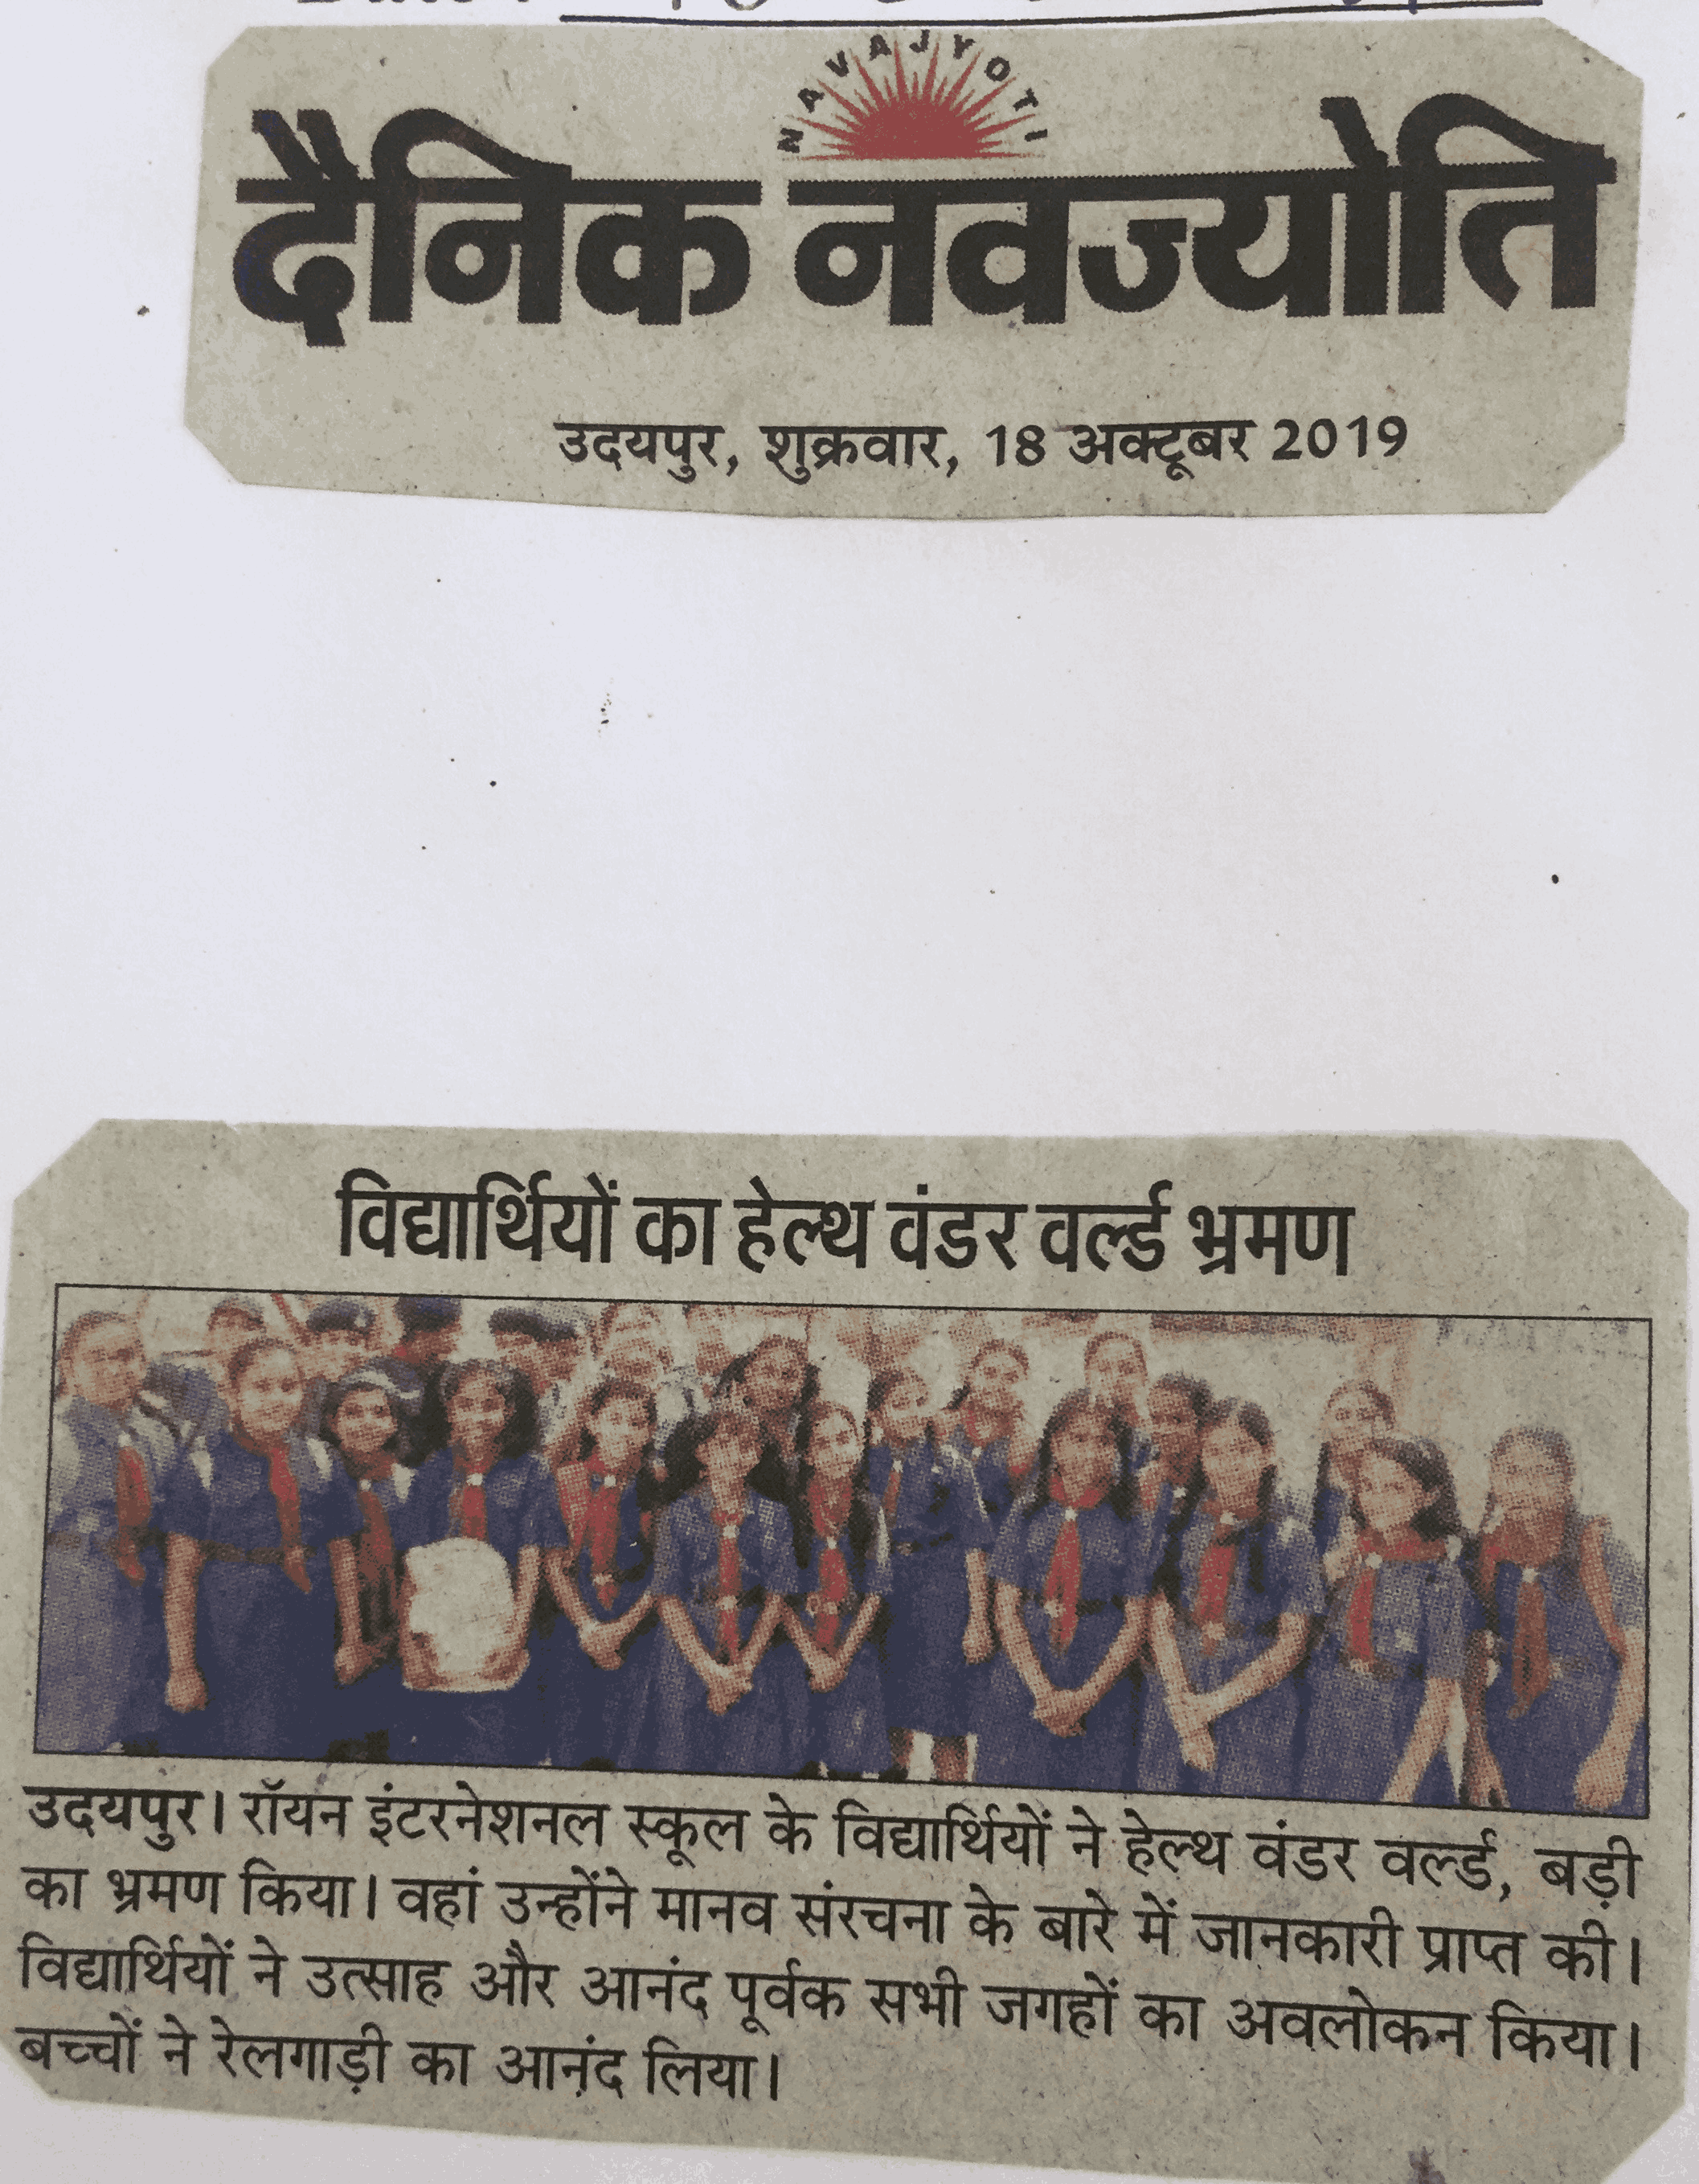 HEALTH WONDER WORLD VISIT - Ryan international School, Udaipur